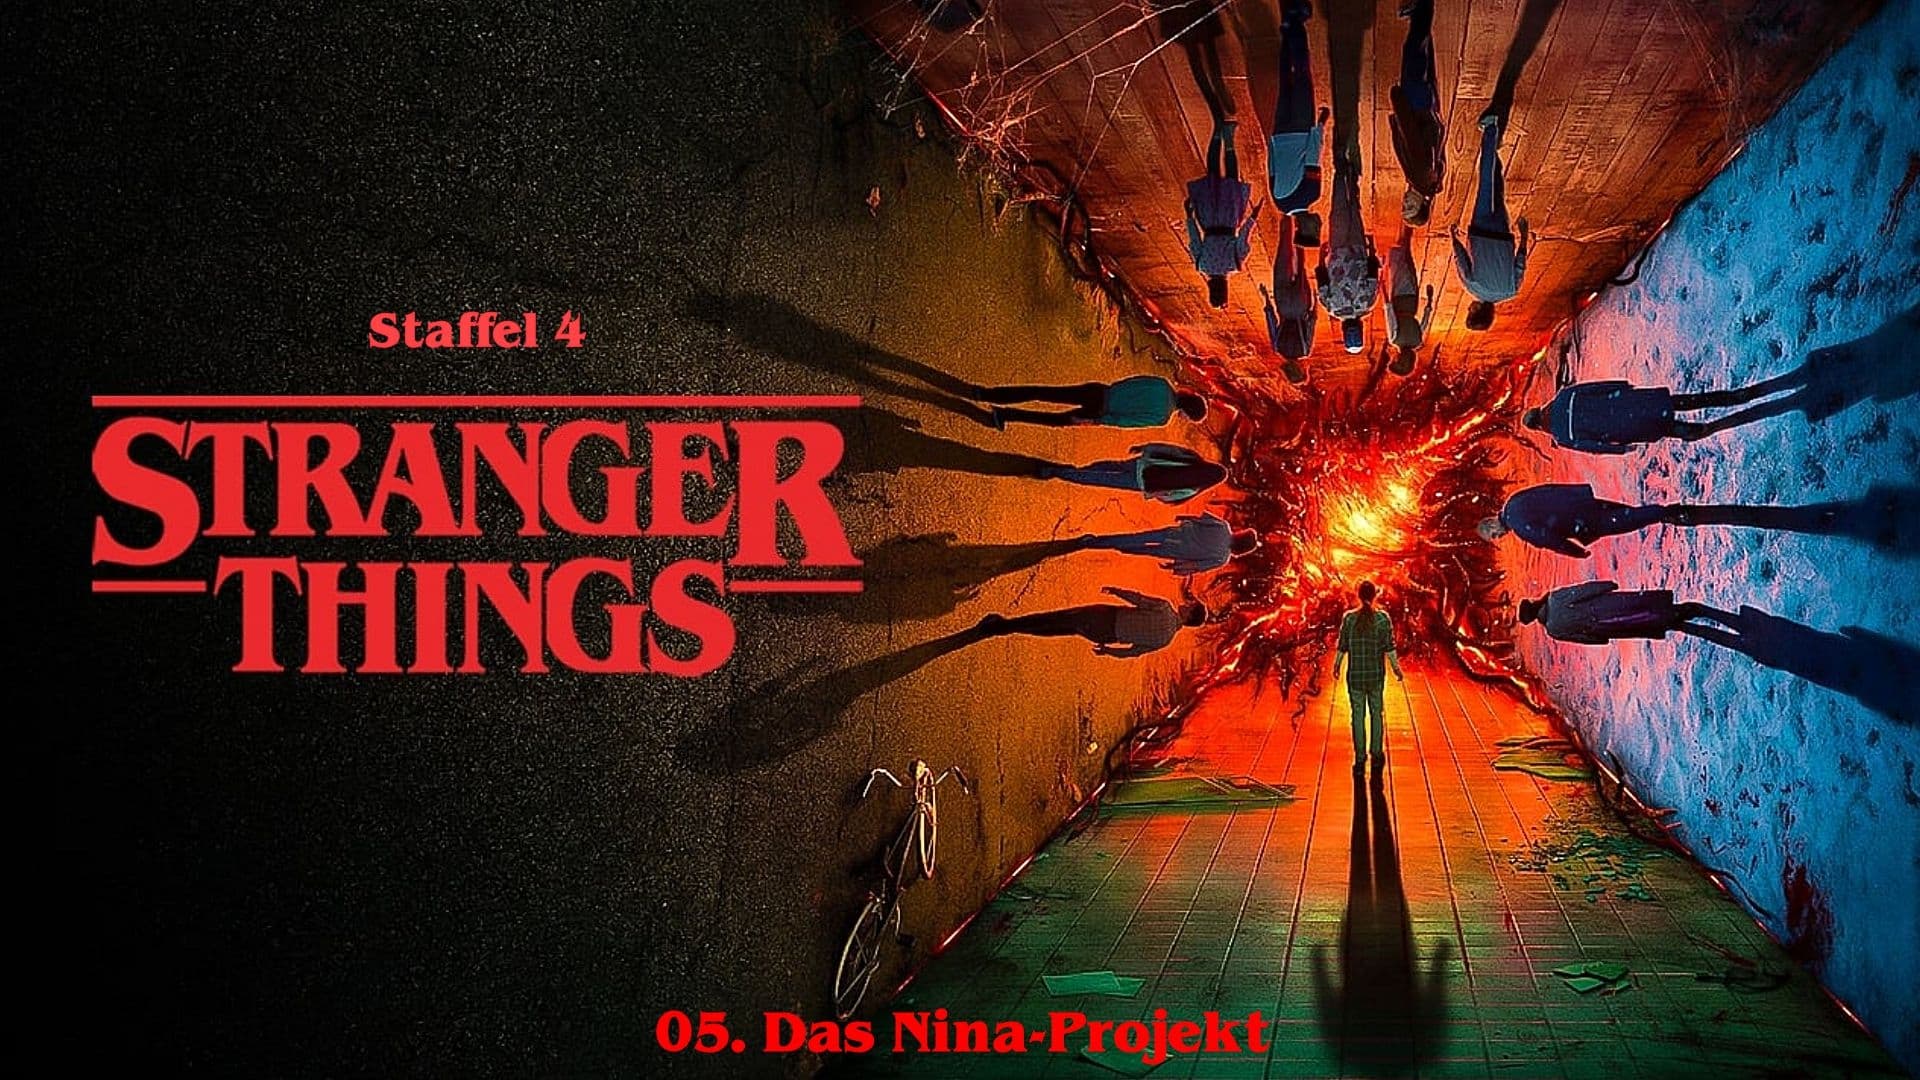 Stranger Things - Stranger Things 3